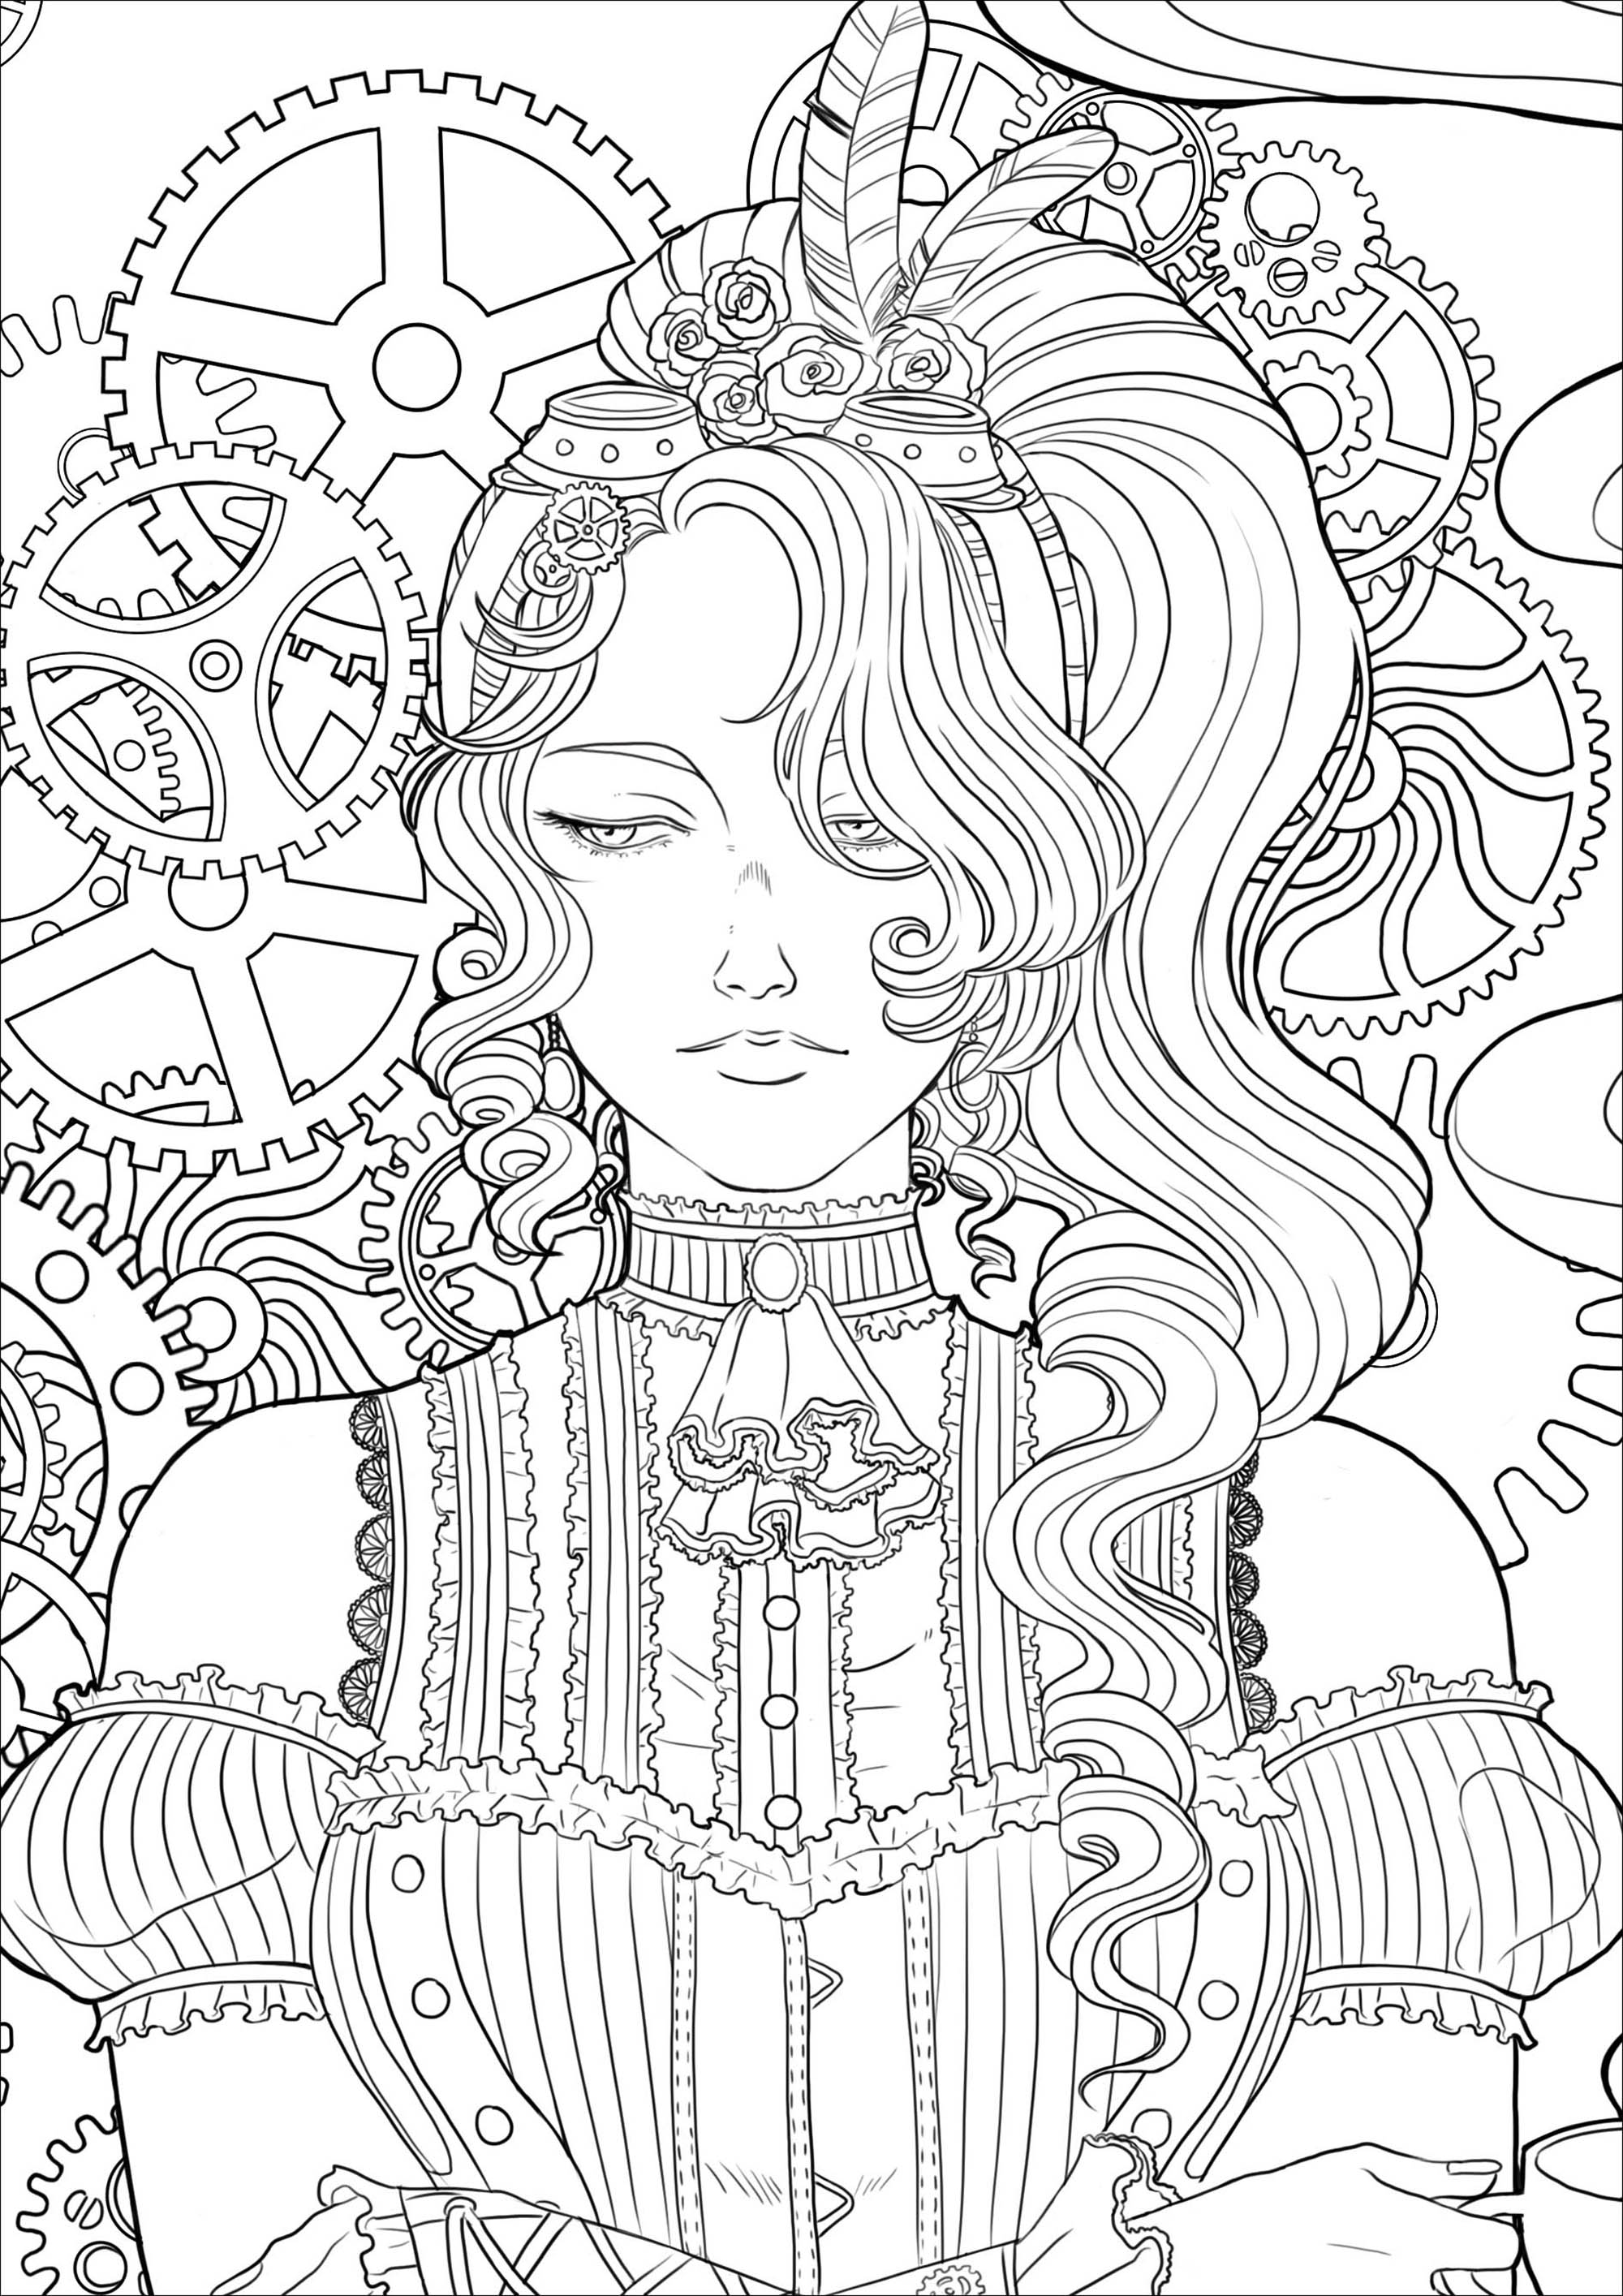 Página para colorear de una joven melancólica con una taza de té, todo ello en un entorno y mecanismos victorianos. Versión 3